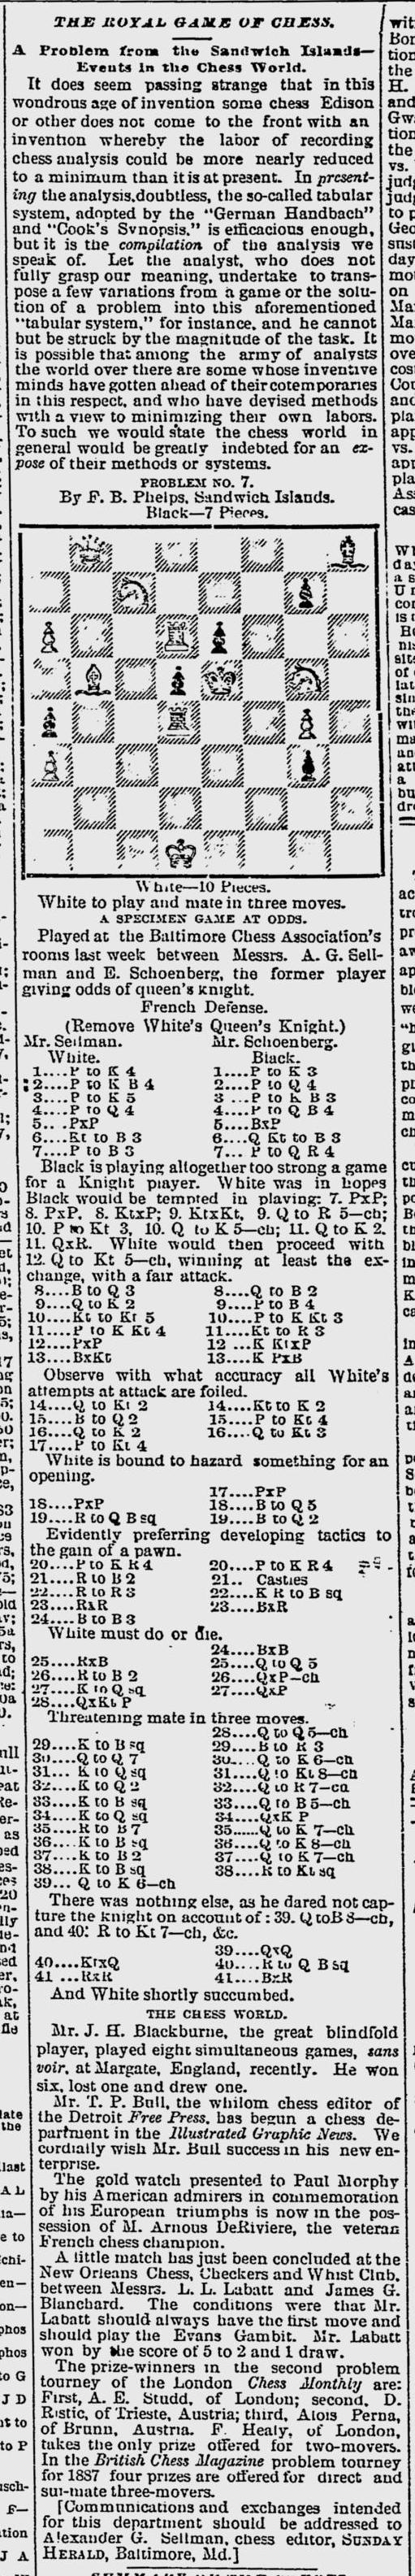 1886.12.19-01 Baltimore Sunday Herald.jpg